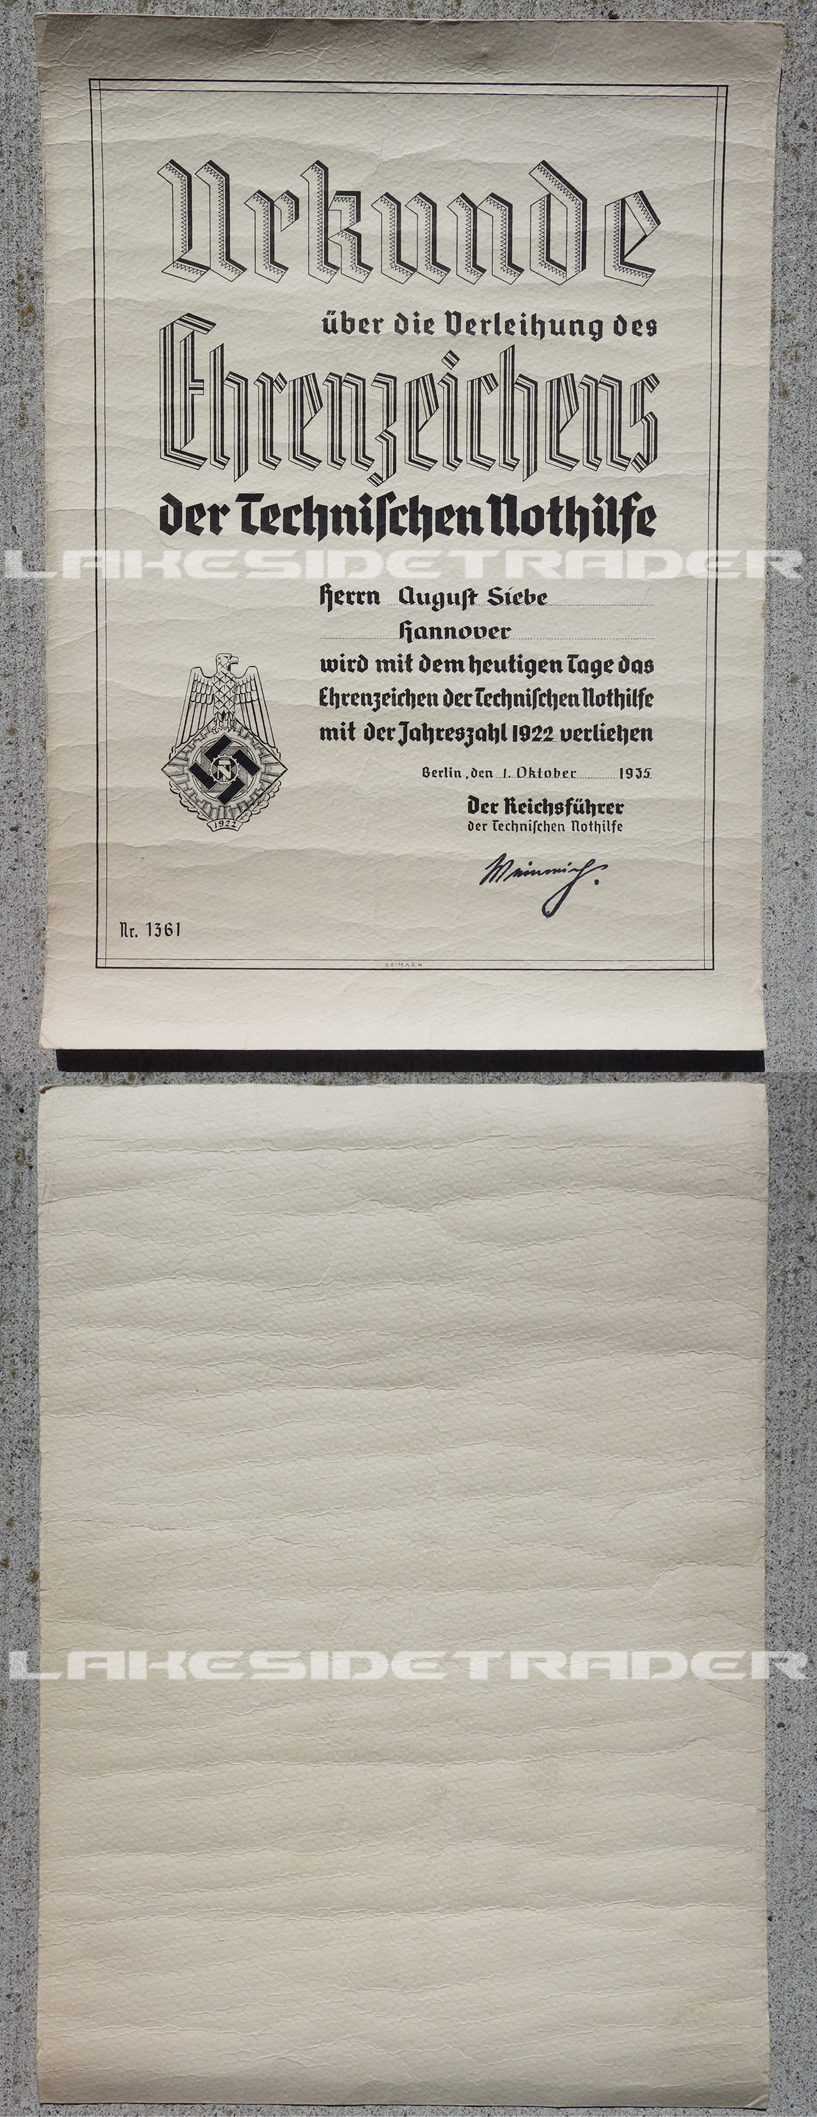 TENO 1922 Honor Award Document Nr. 1361